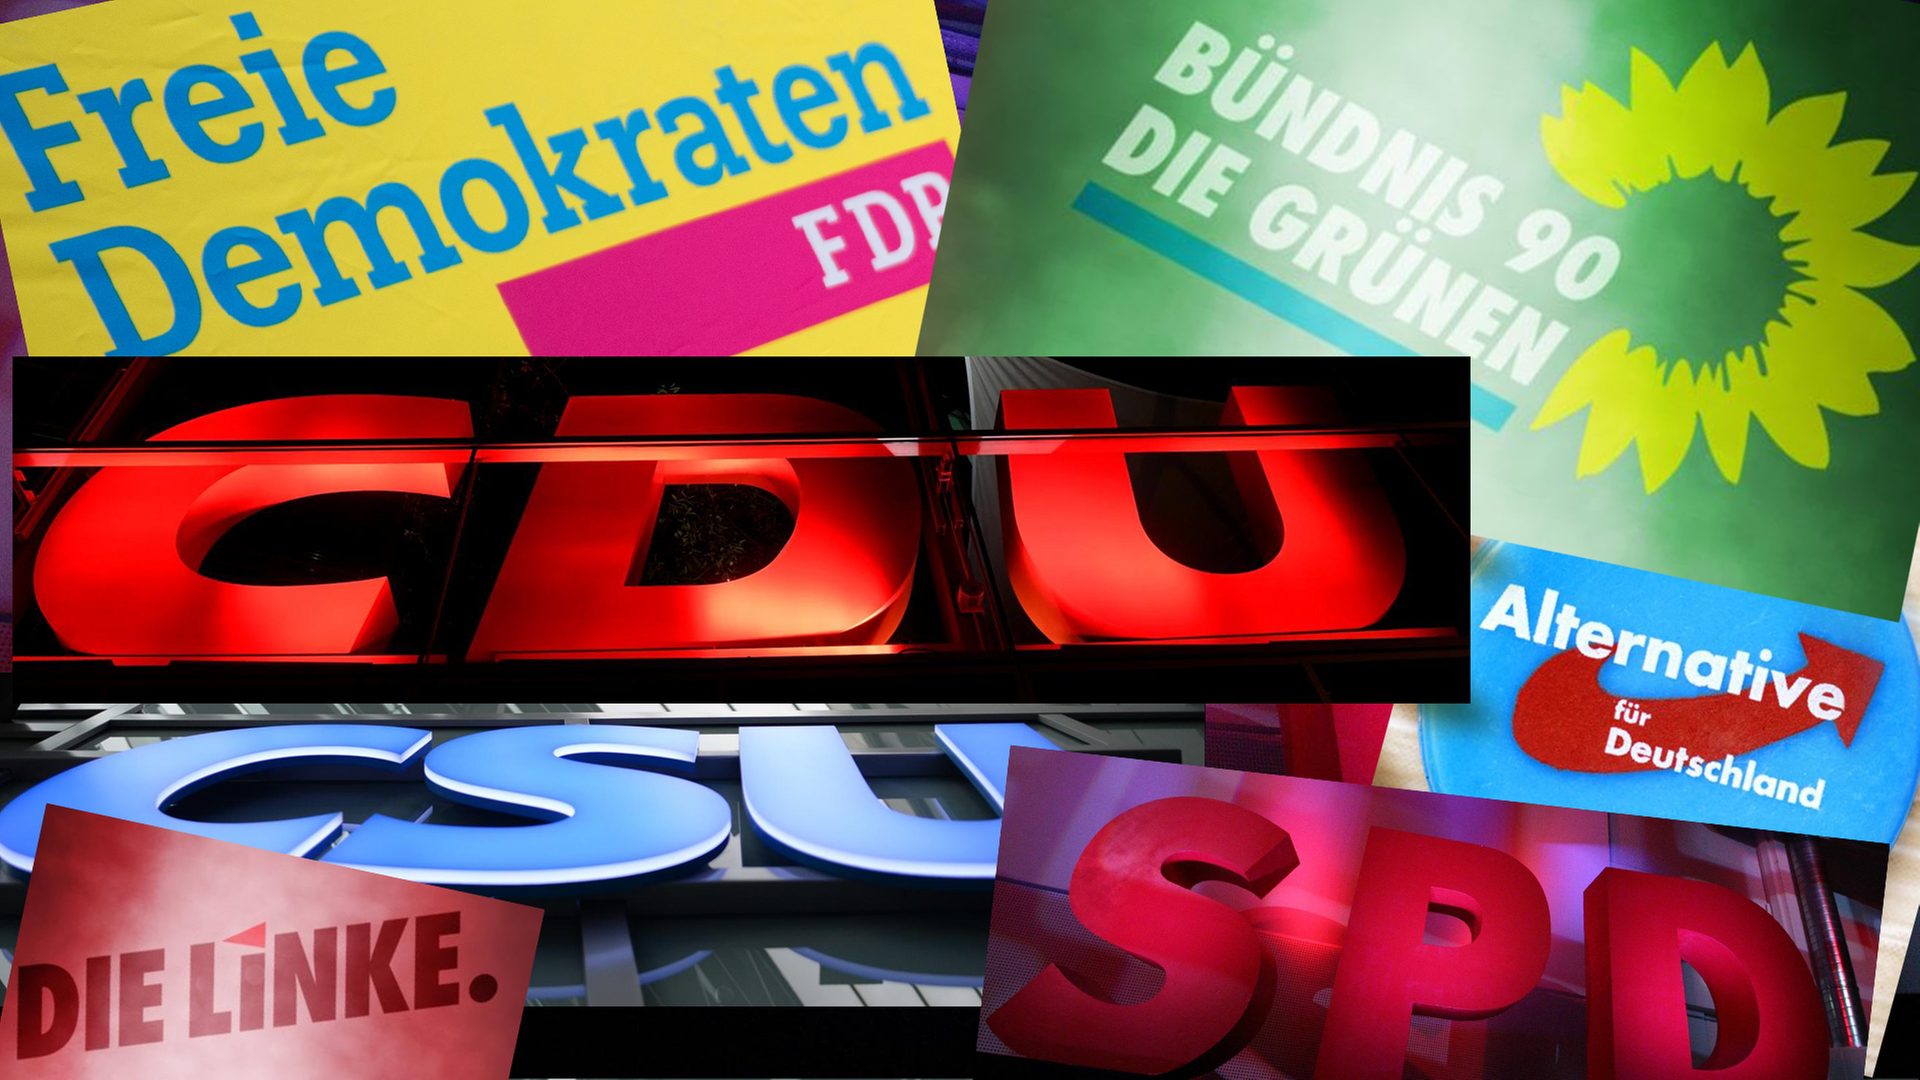 Die Logos der Parteien CDU.CSU, SPD, die Grünen, FDP, Die Linke und AfD.